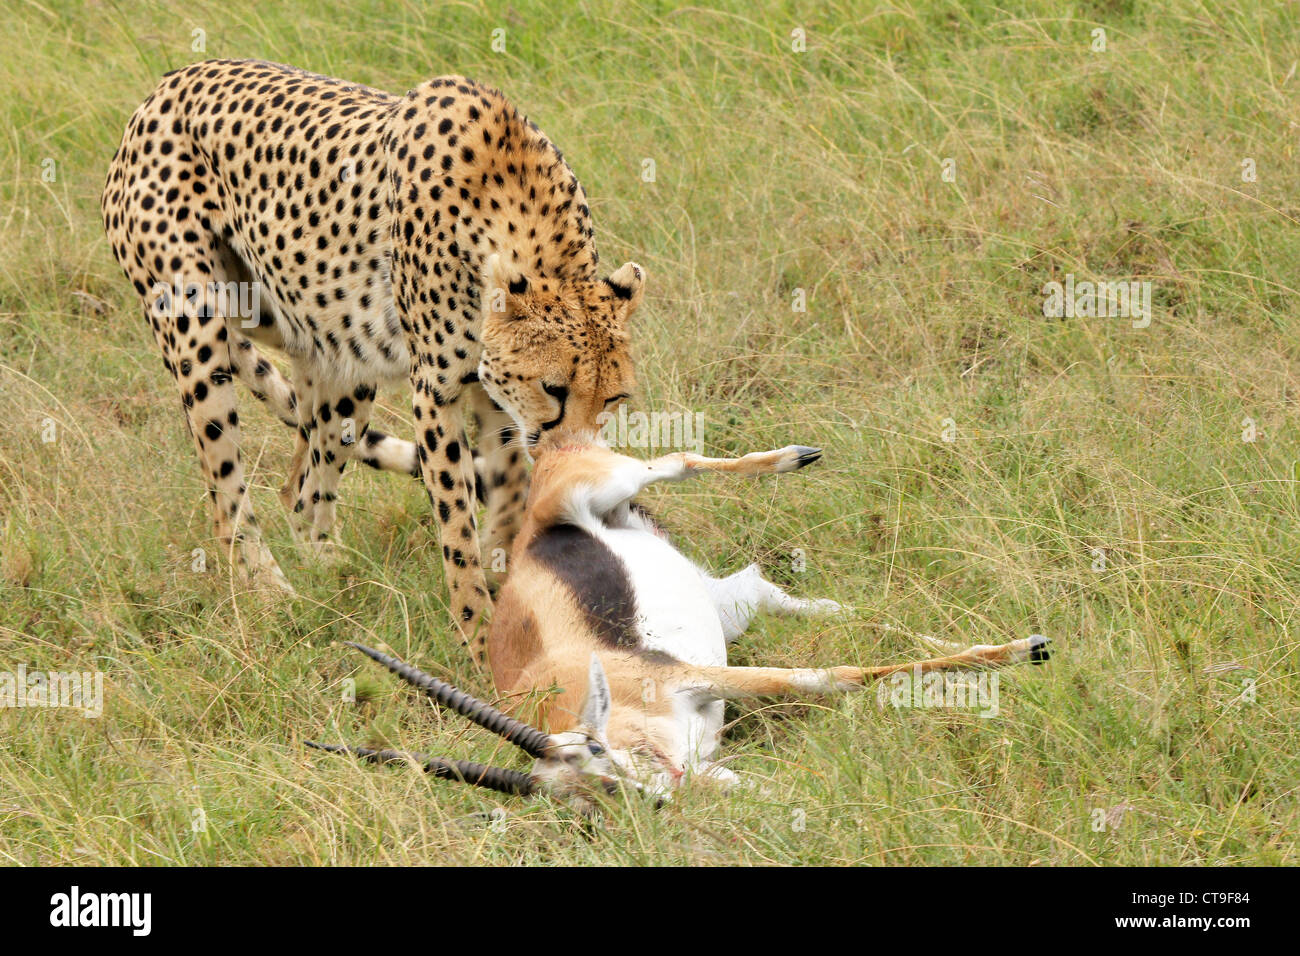 Ein Gepard mit seinen Kill, ein Thomson es Gazelle. Fotografiert wurde diese töten in der Wildnis in die Masai Mara, Kenia, Afrika. Stockfoto